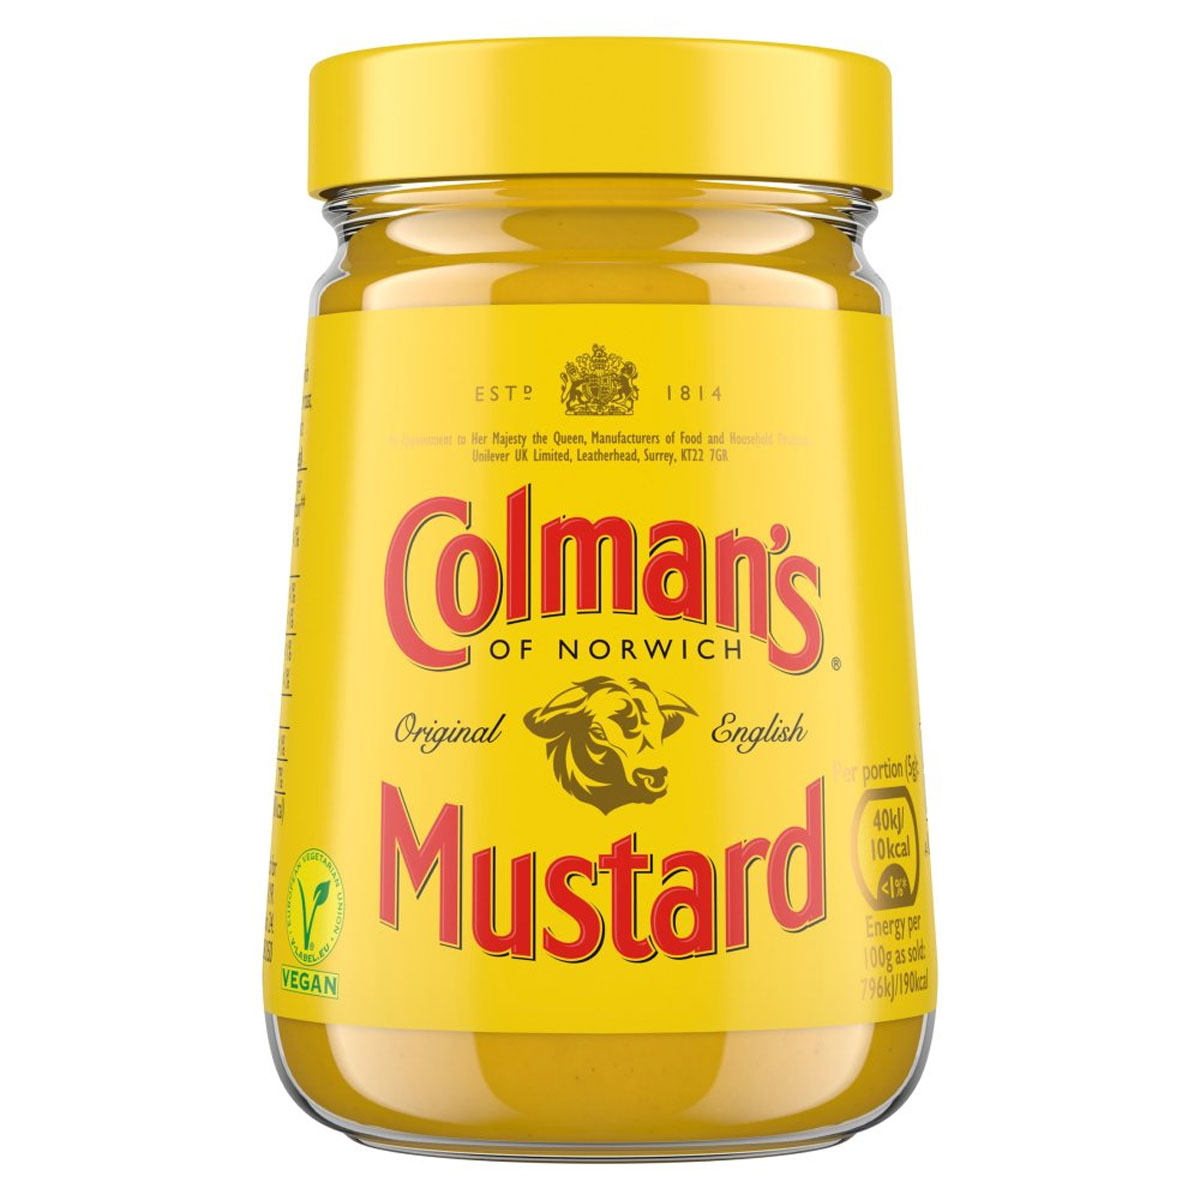 Colmans - Mustard Original English Mustard - 170g in a jar.